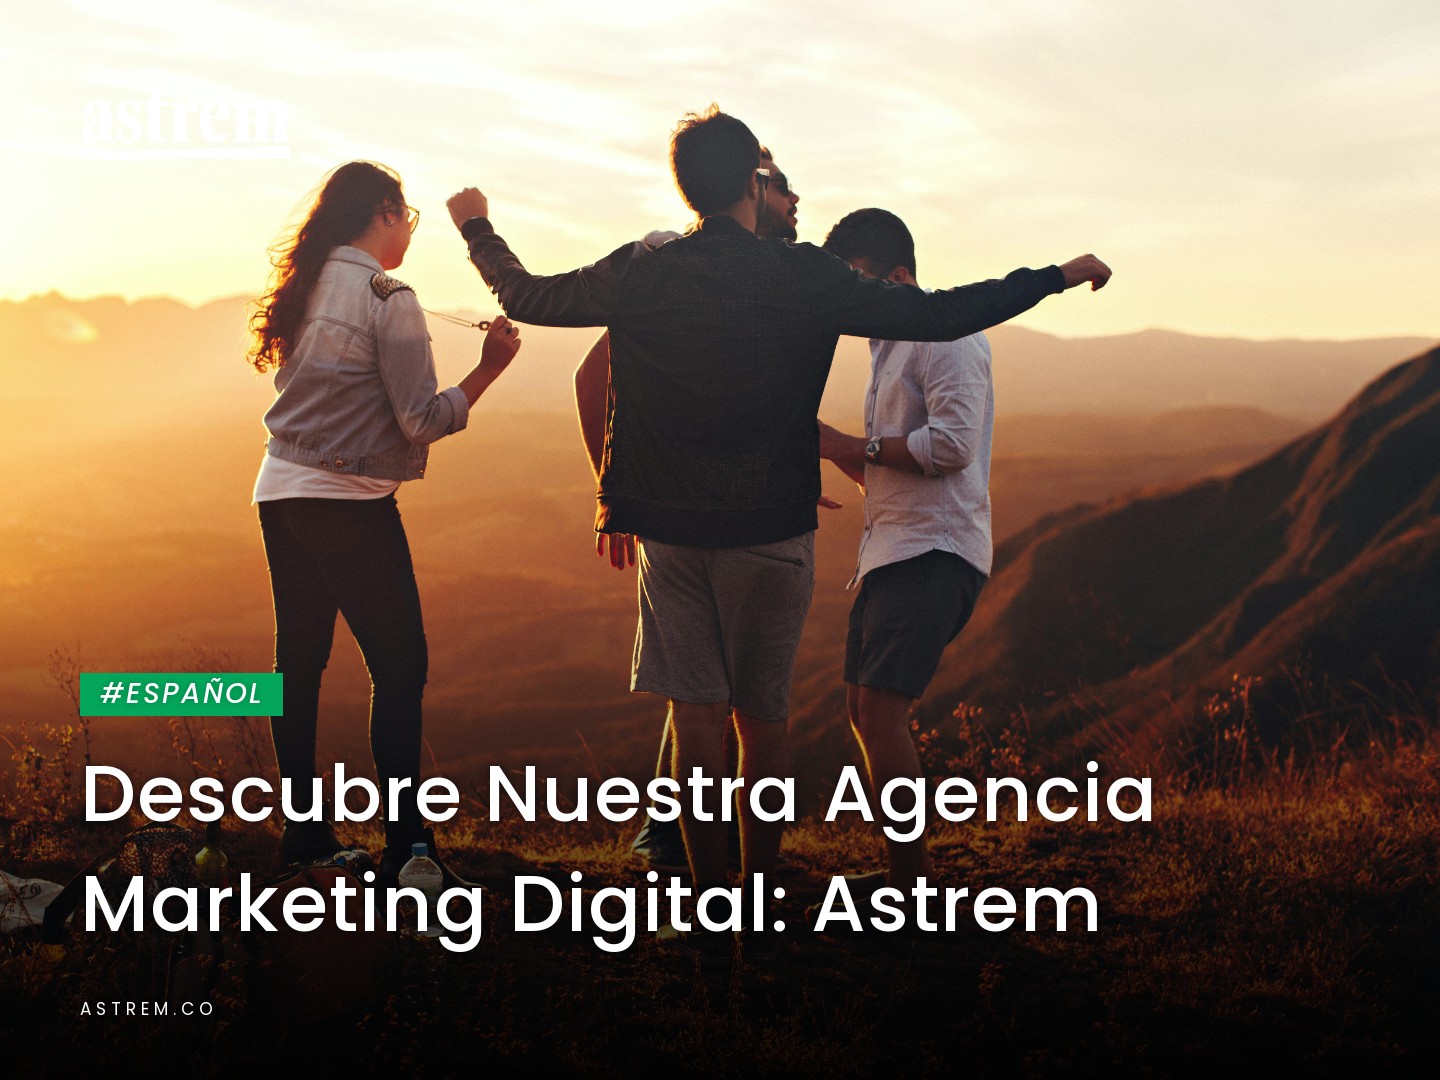 Descubre Nuestra Agencia Marketing Digital: Astrem Image